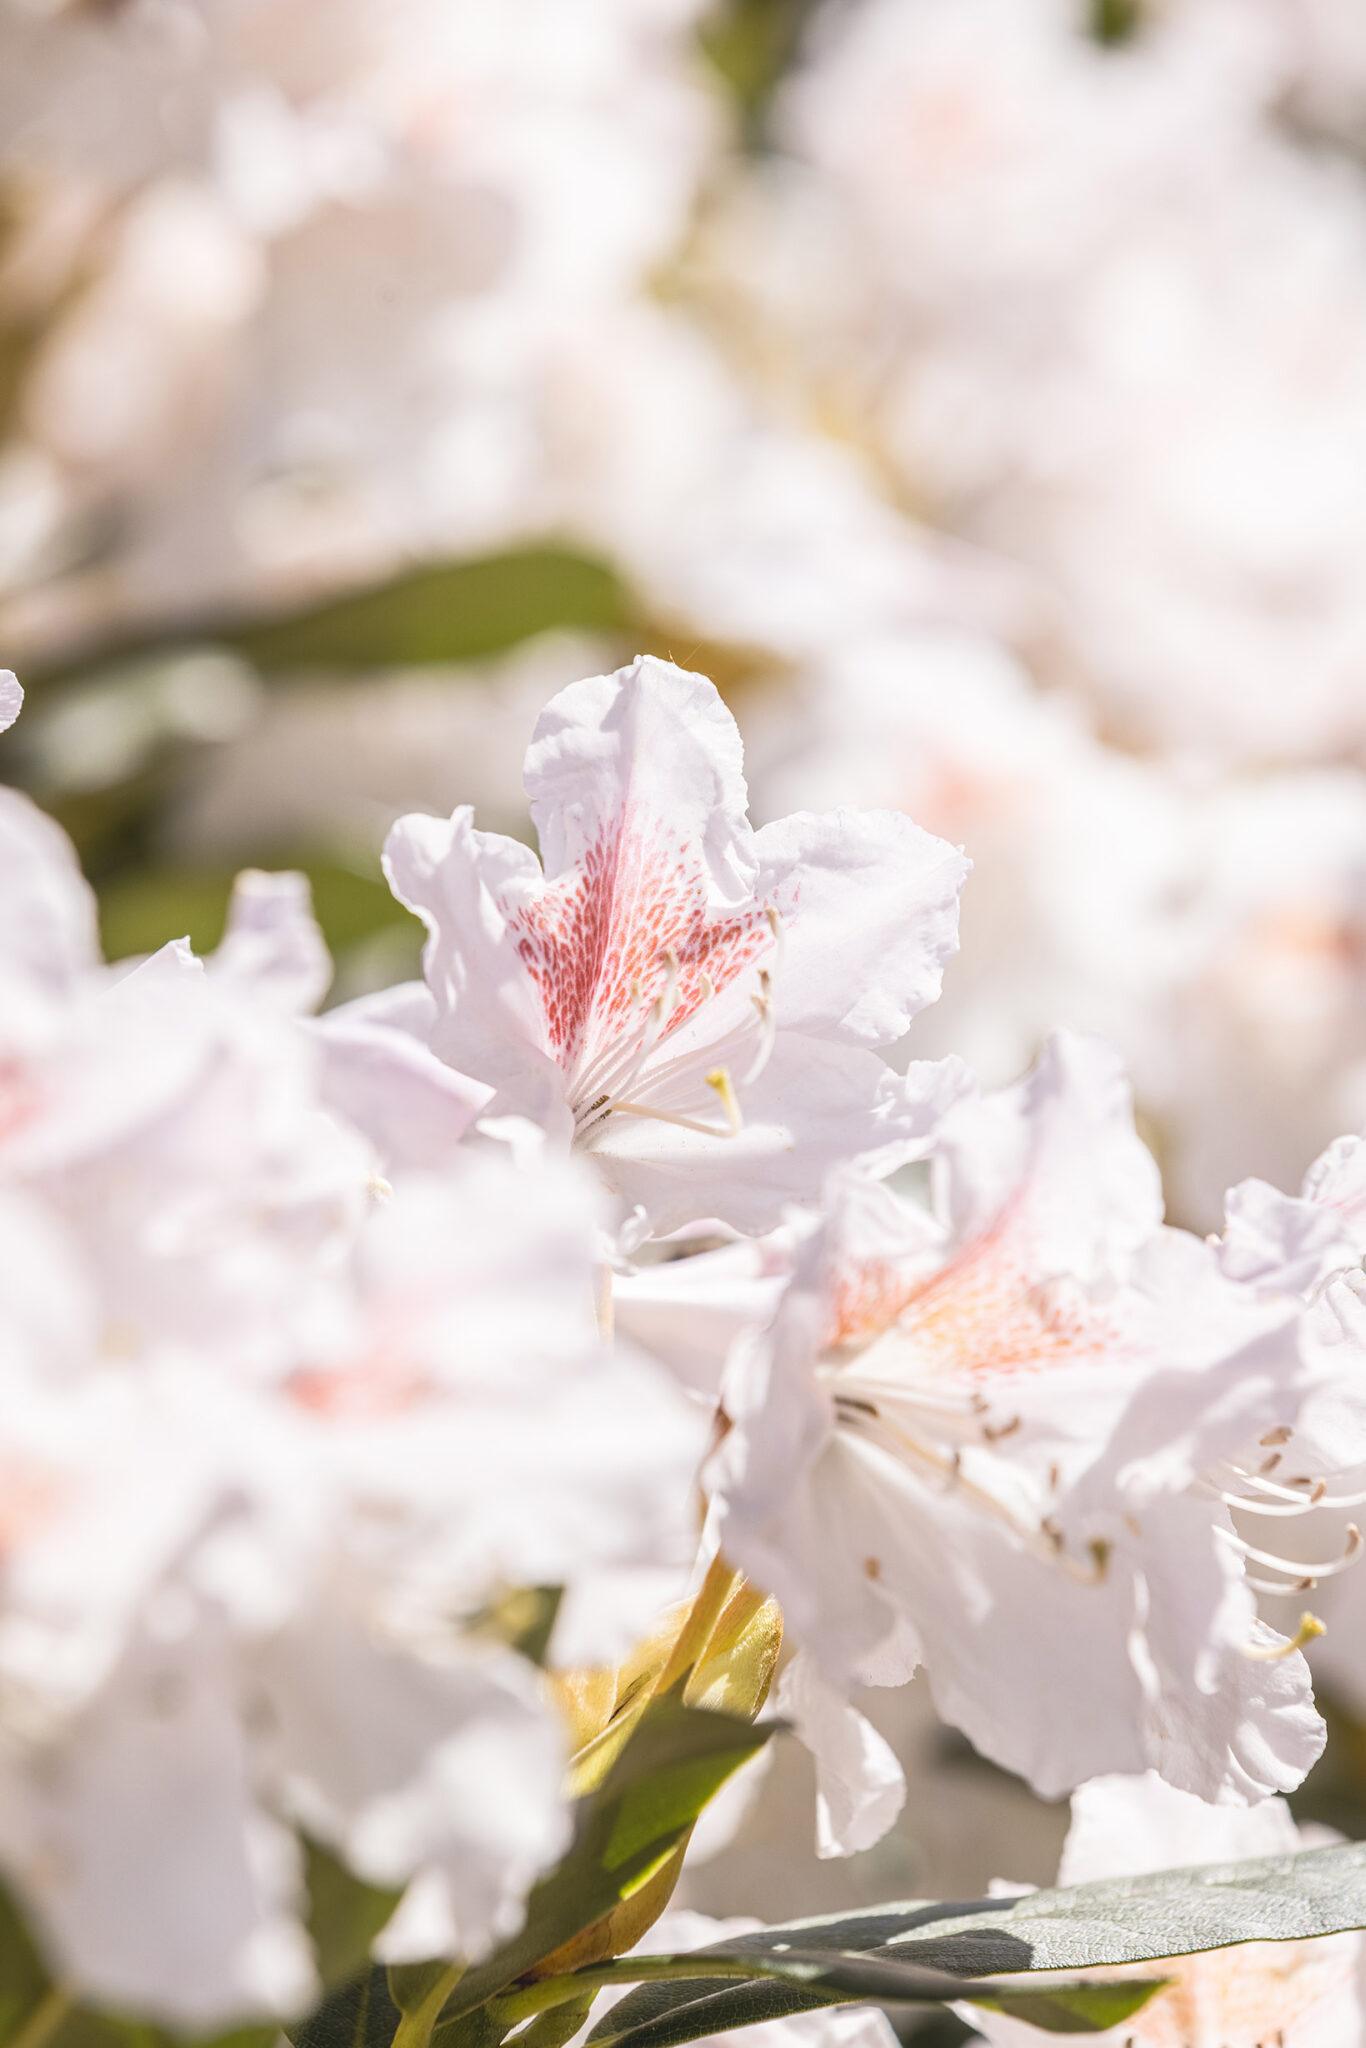 Närbild på en vit blomma med inslag av rosa.